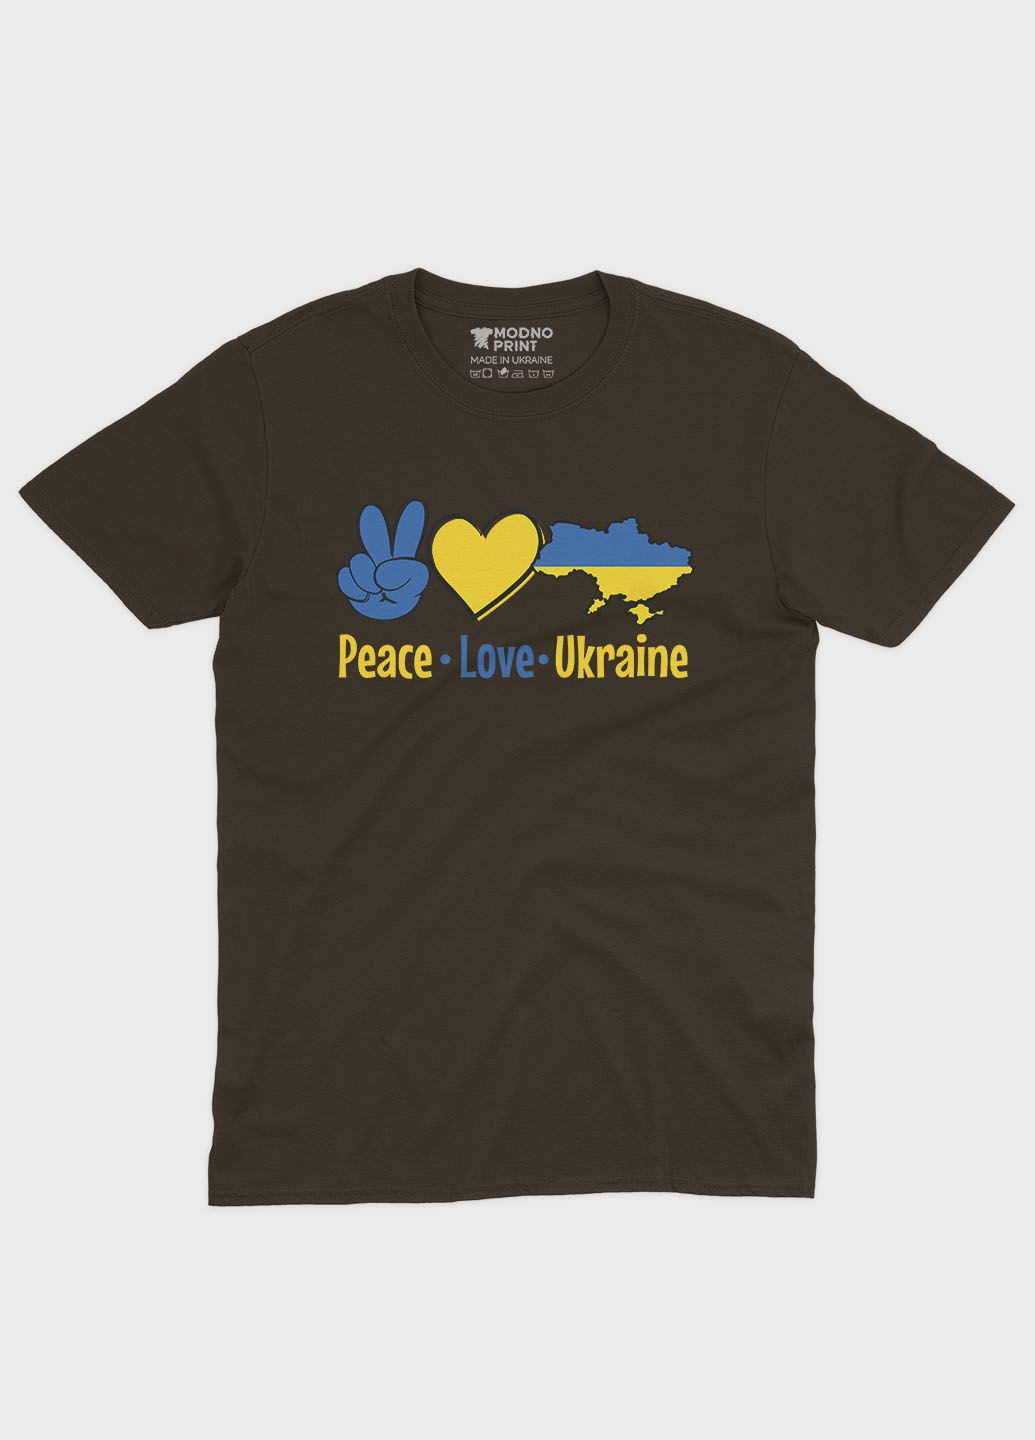 Коричневая мужская футболка с патриотическим принтом peace love ukraine (ts001-2-dch-005-1-040) Modno